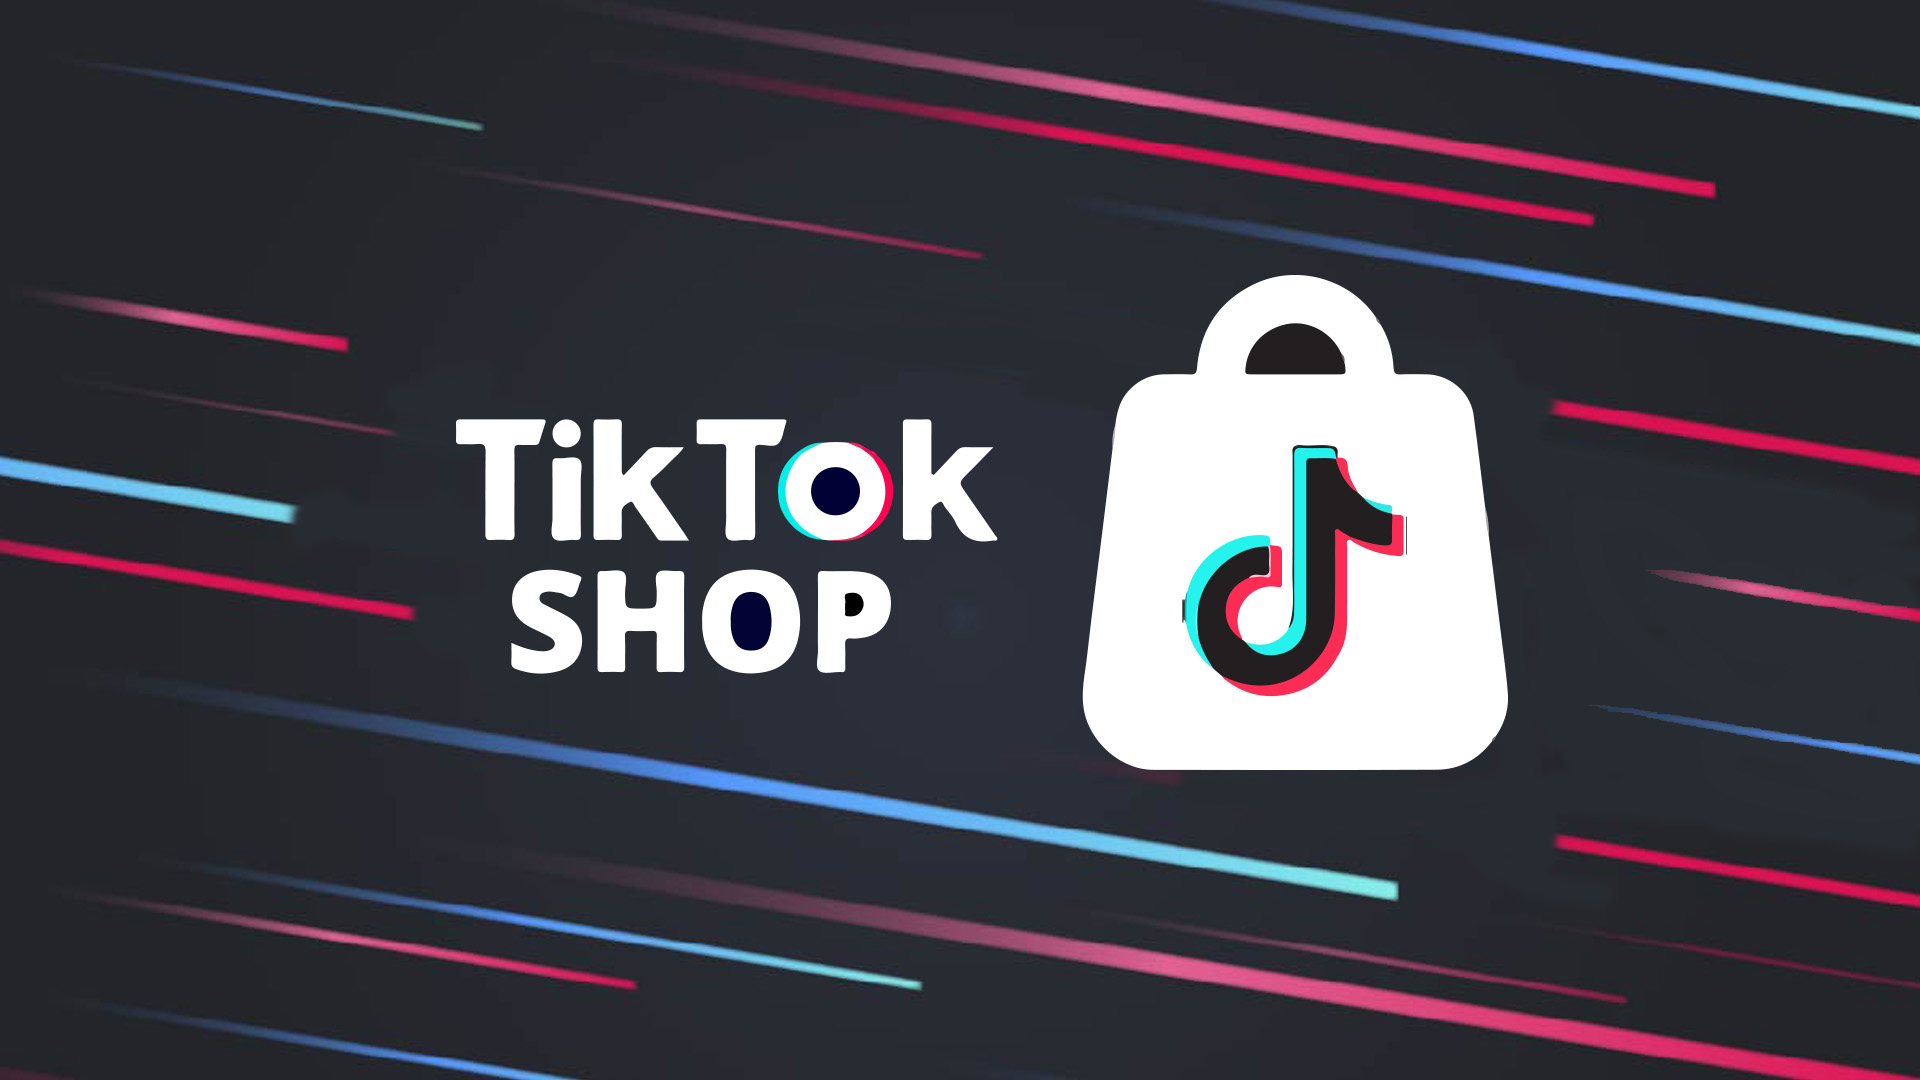 TikTok Shop印尼官方商家入驻手册和常见问题解答！含官方快速入驻渠道